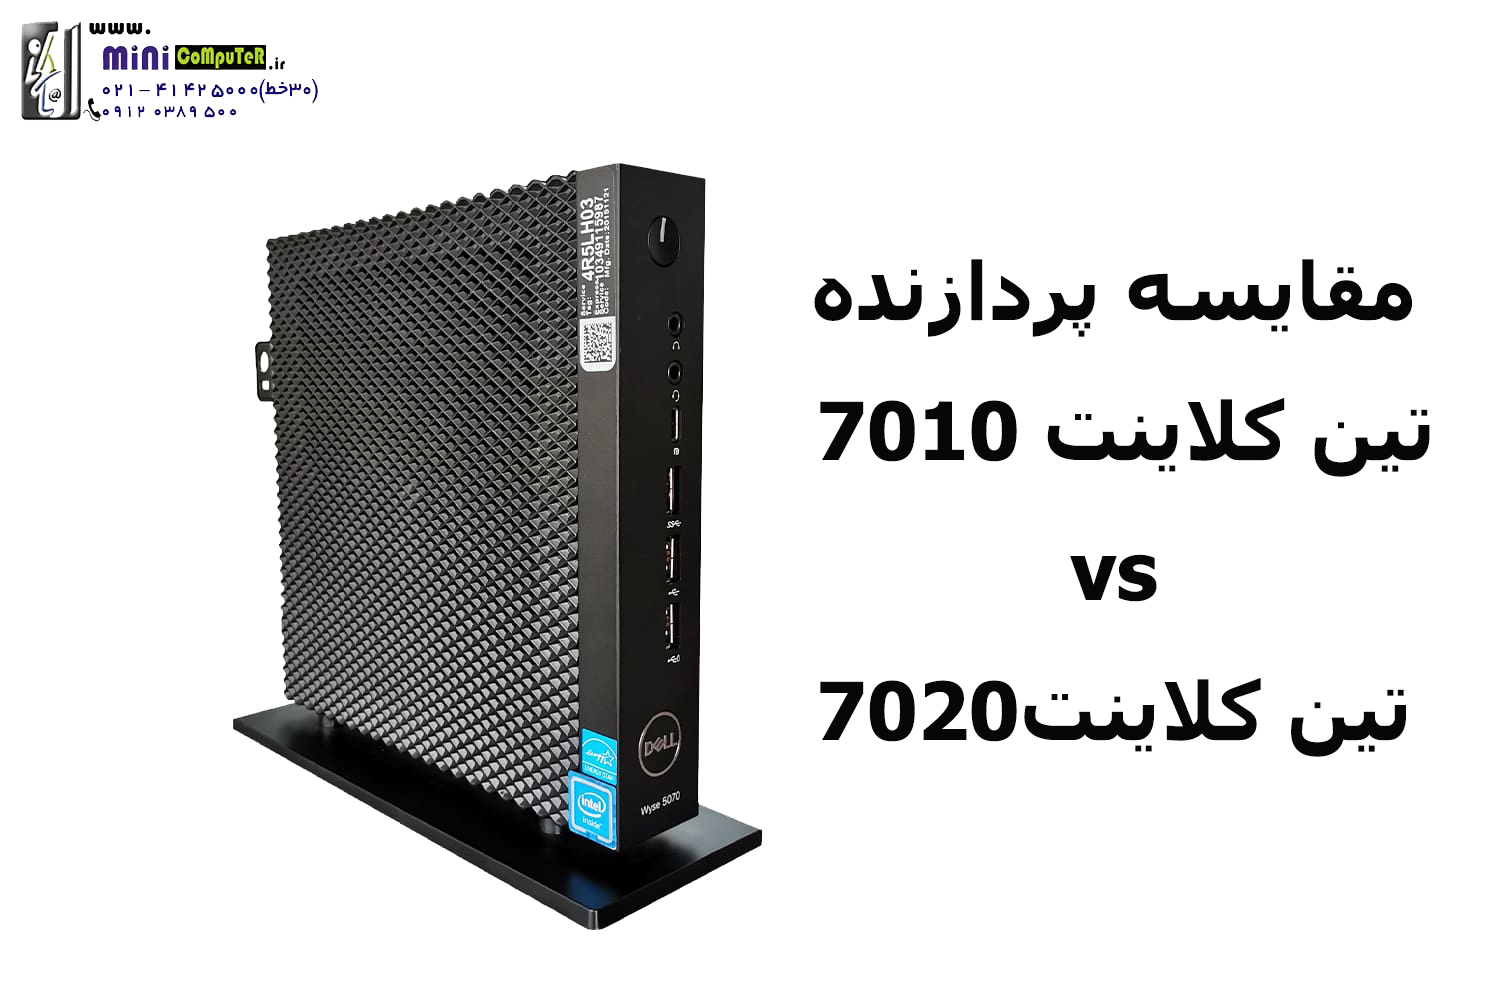 مقایسه پردازنده دو تین کلاینت Dell Wyse 7020 و Dell Wyse 7010